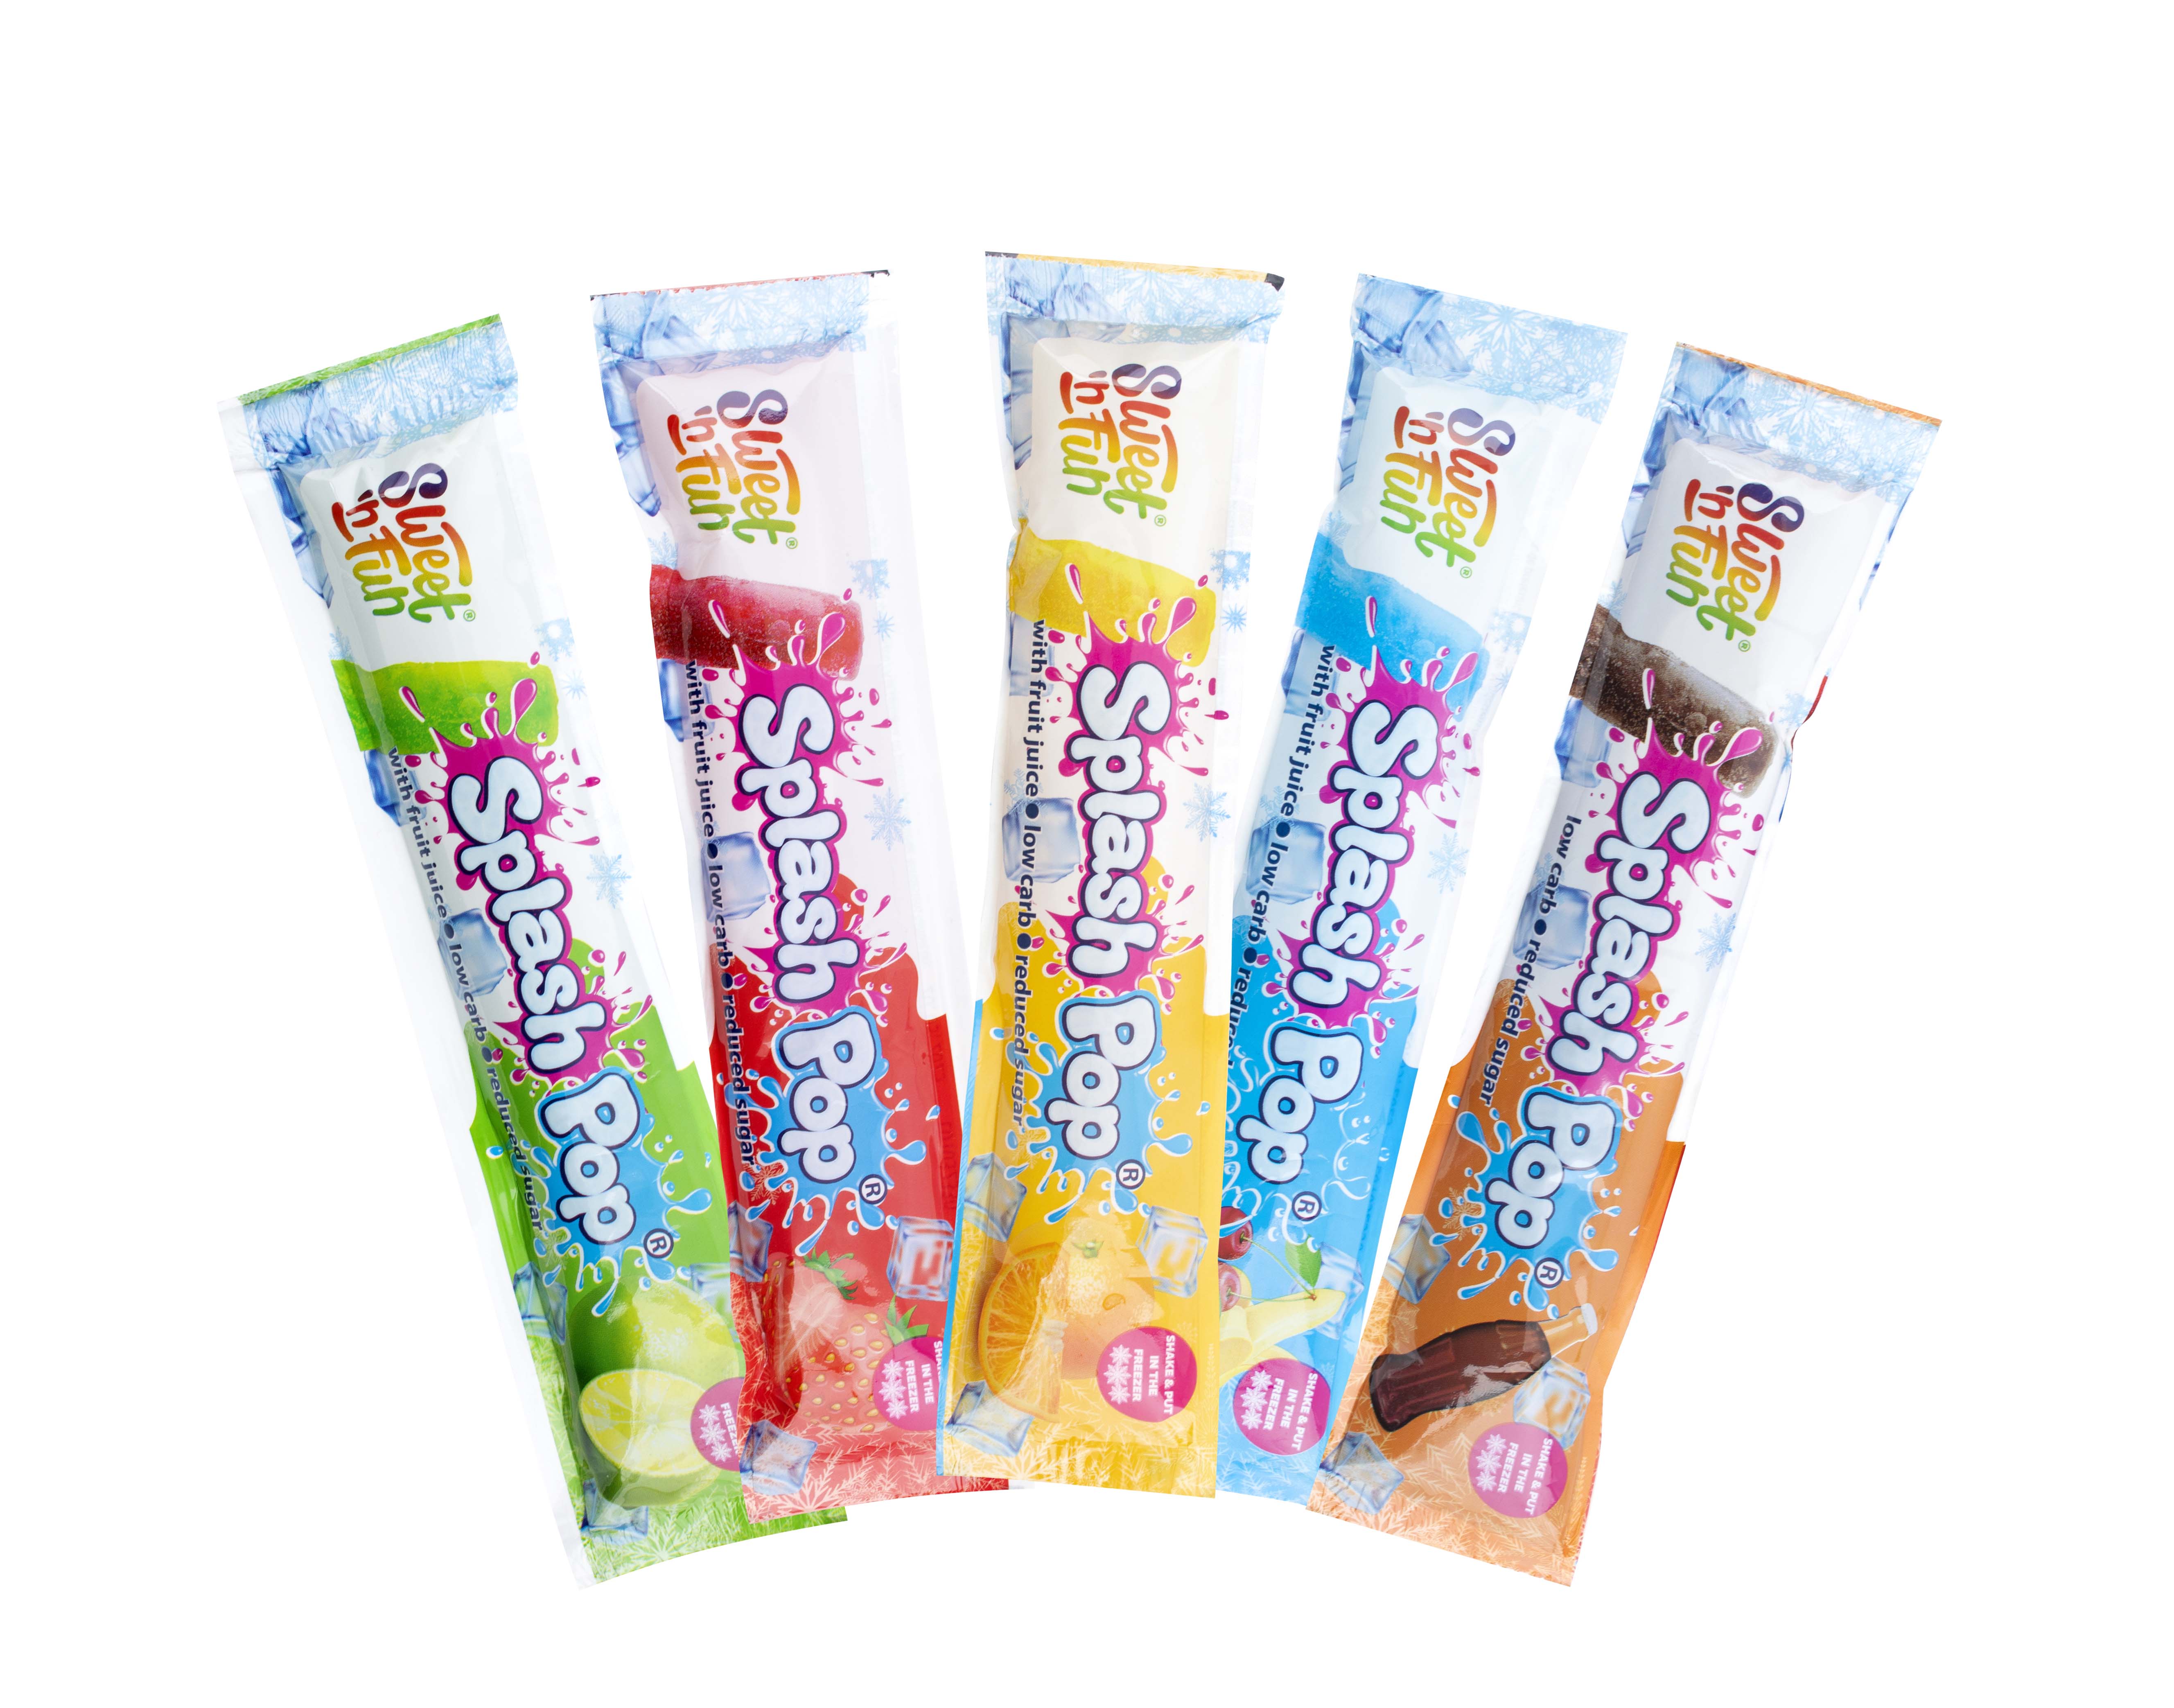 Splash pop – vodová zmrzlina s ovocným podílem 50ml